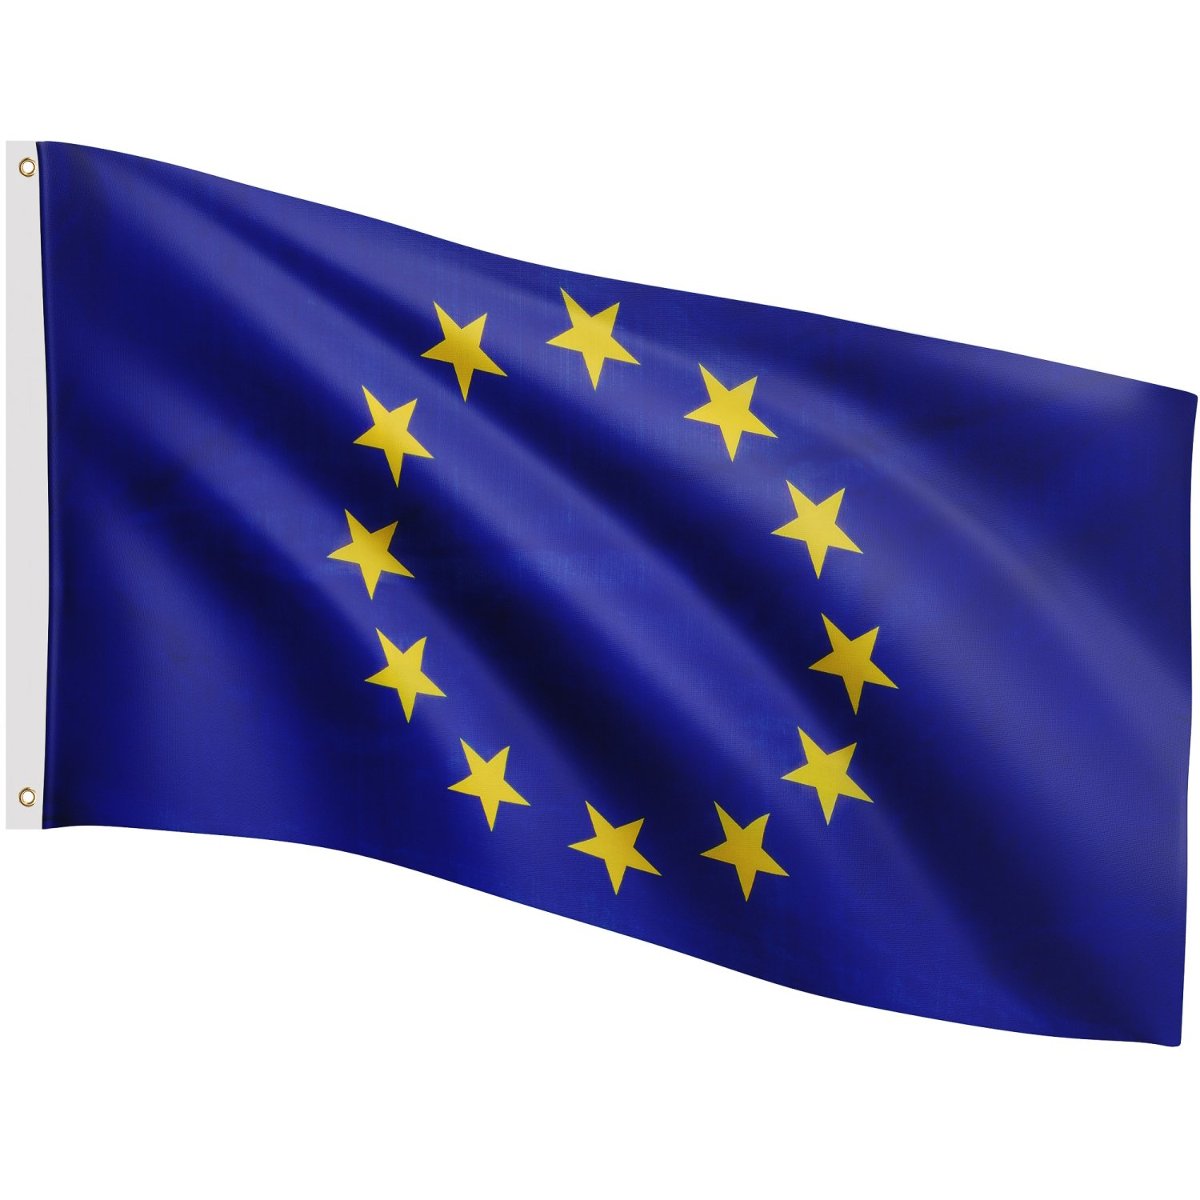 Tuin Flaga Unii Europejskiej - 120 cm x 80 cm